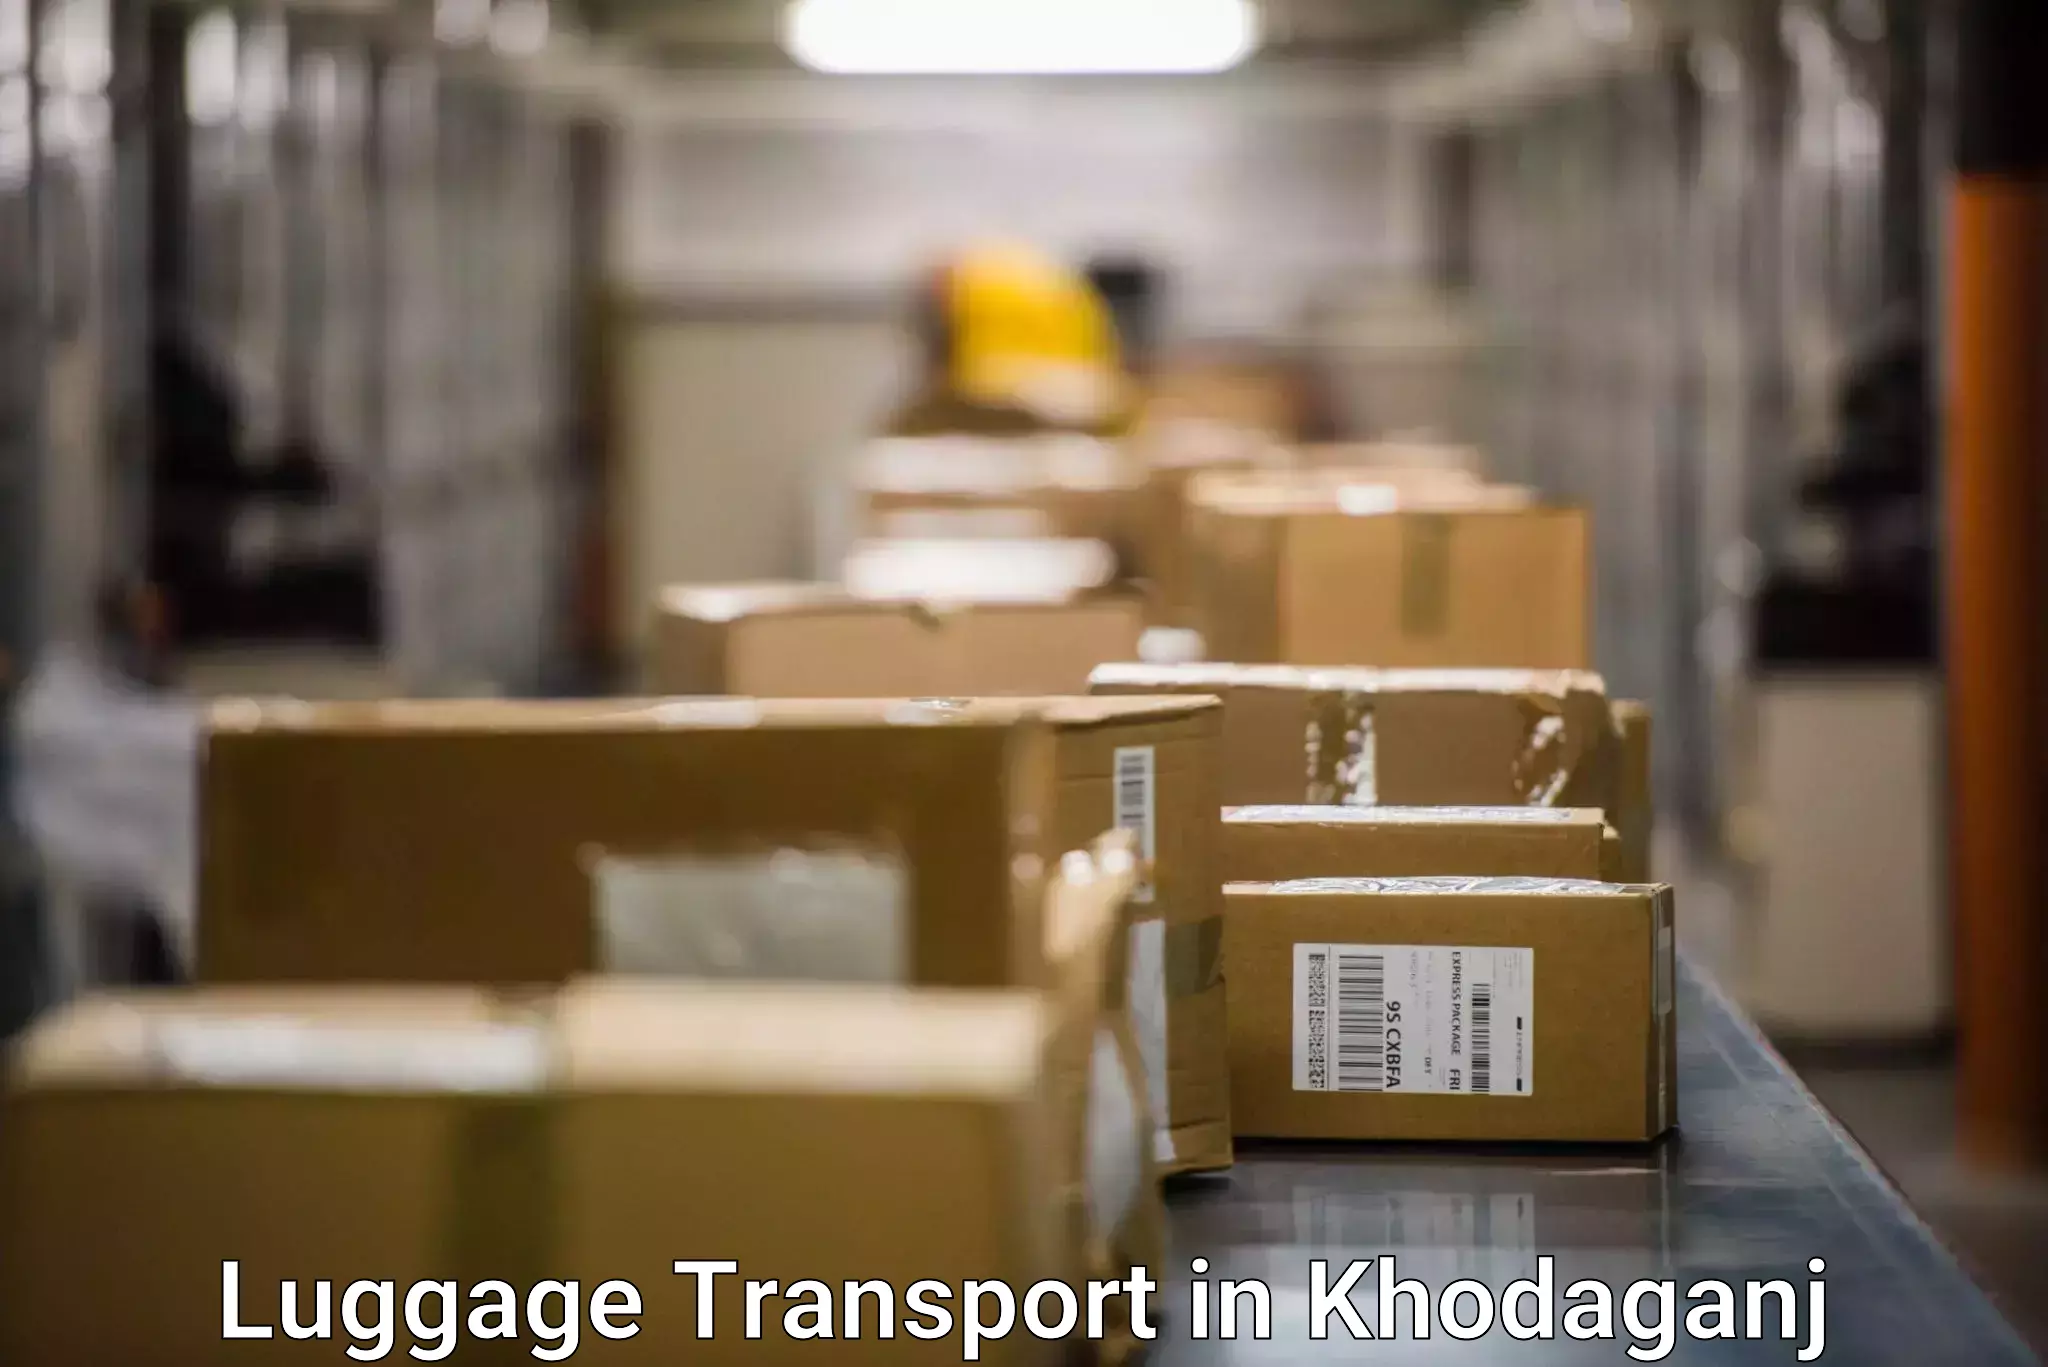 Luggage transport rates in Khodaganj